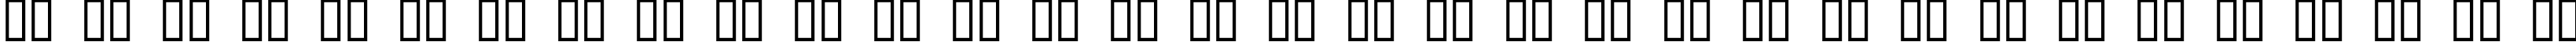 Пример написания русского алфавита шрифтом DesdaC